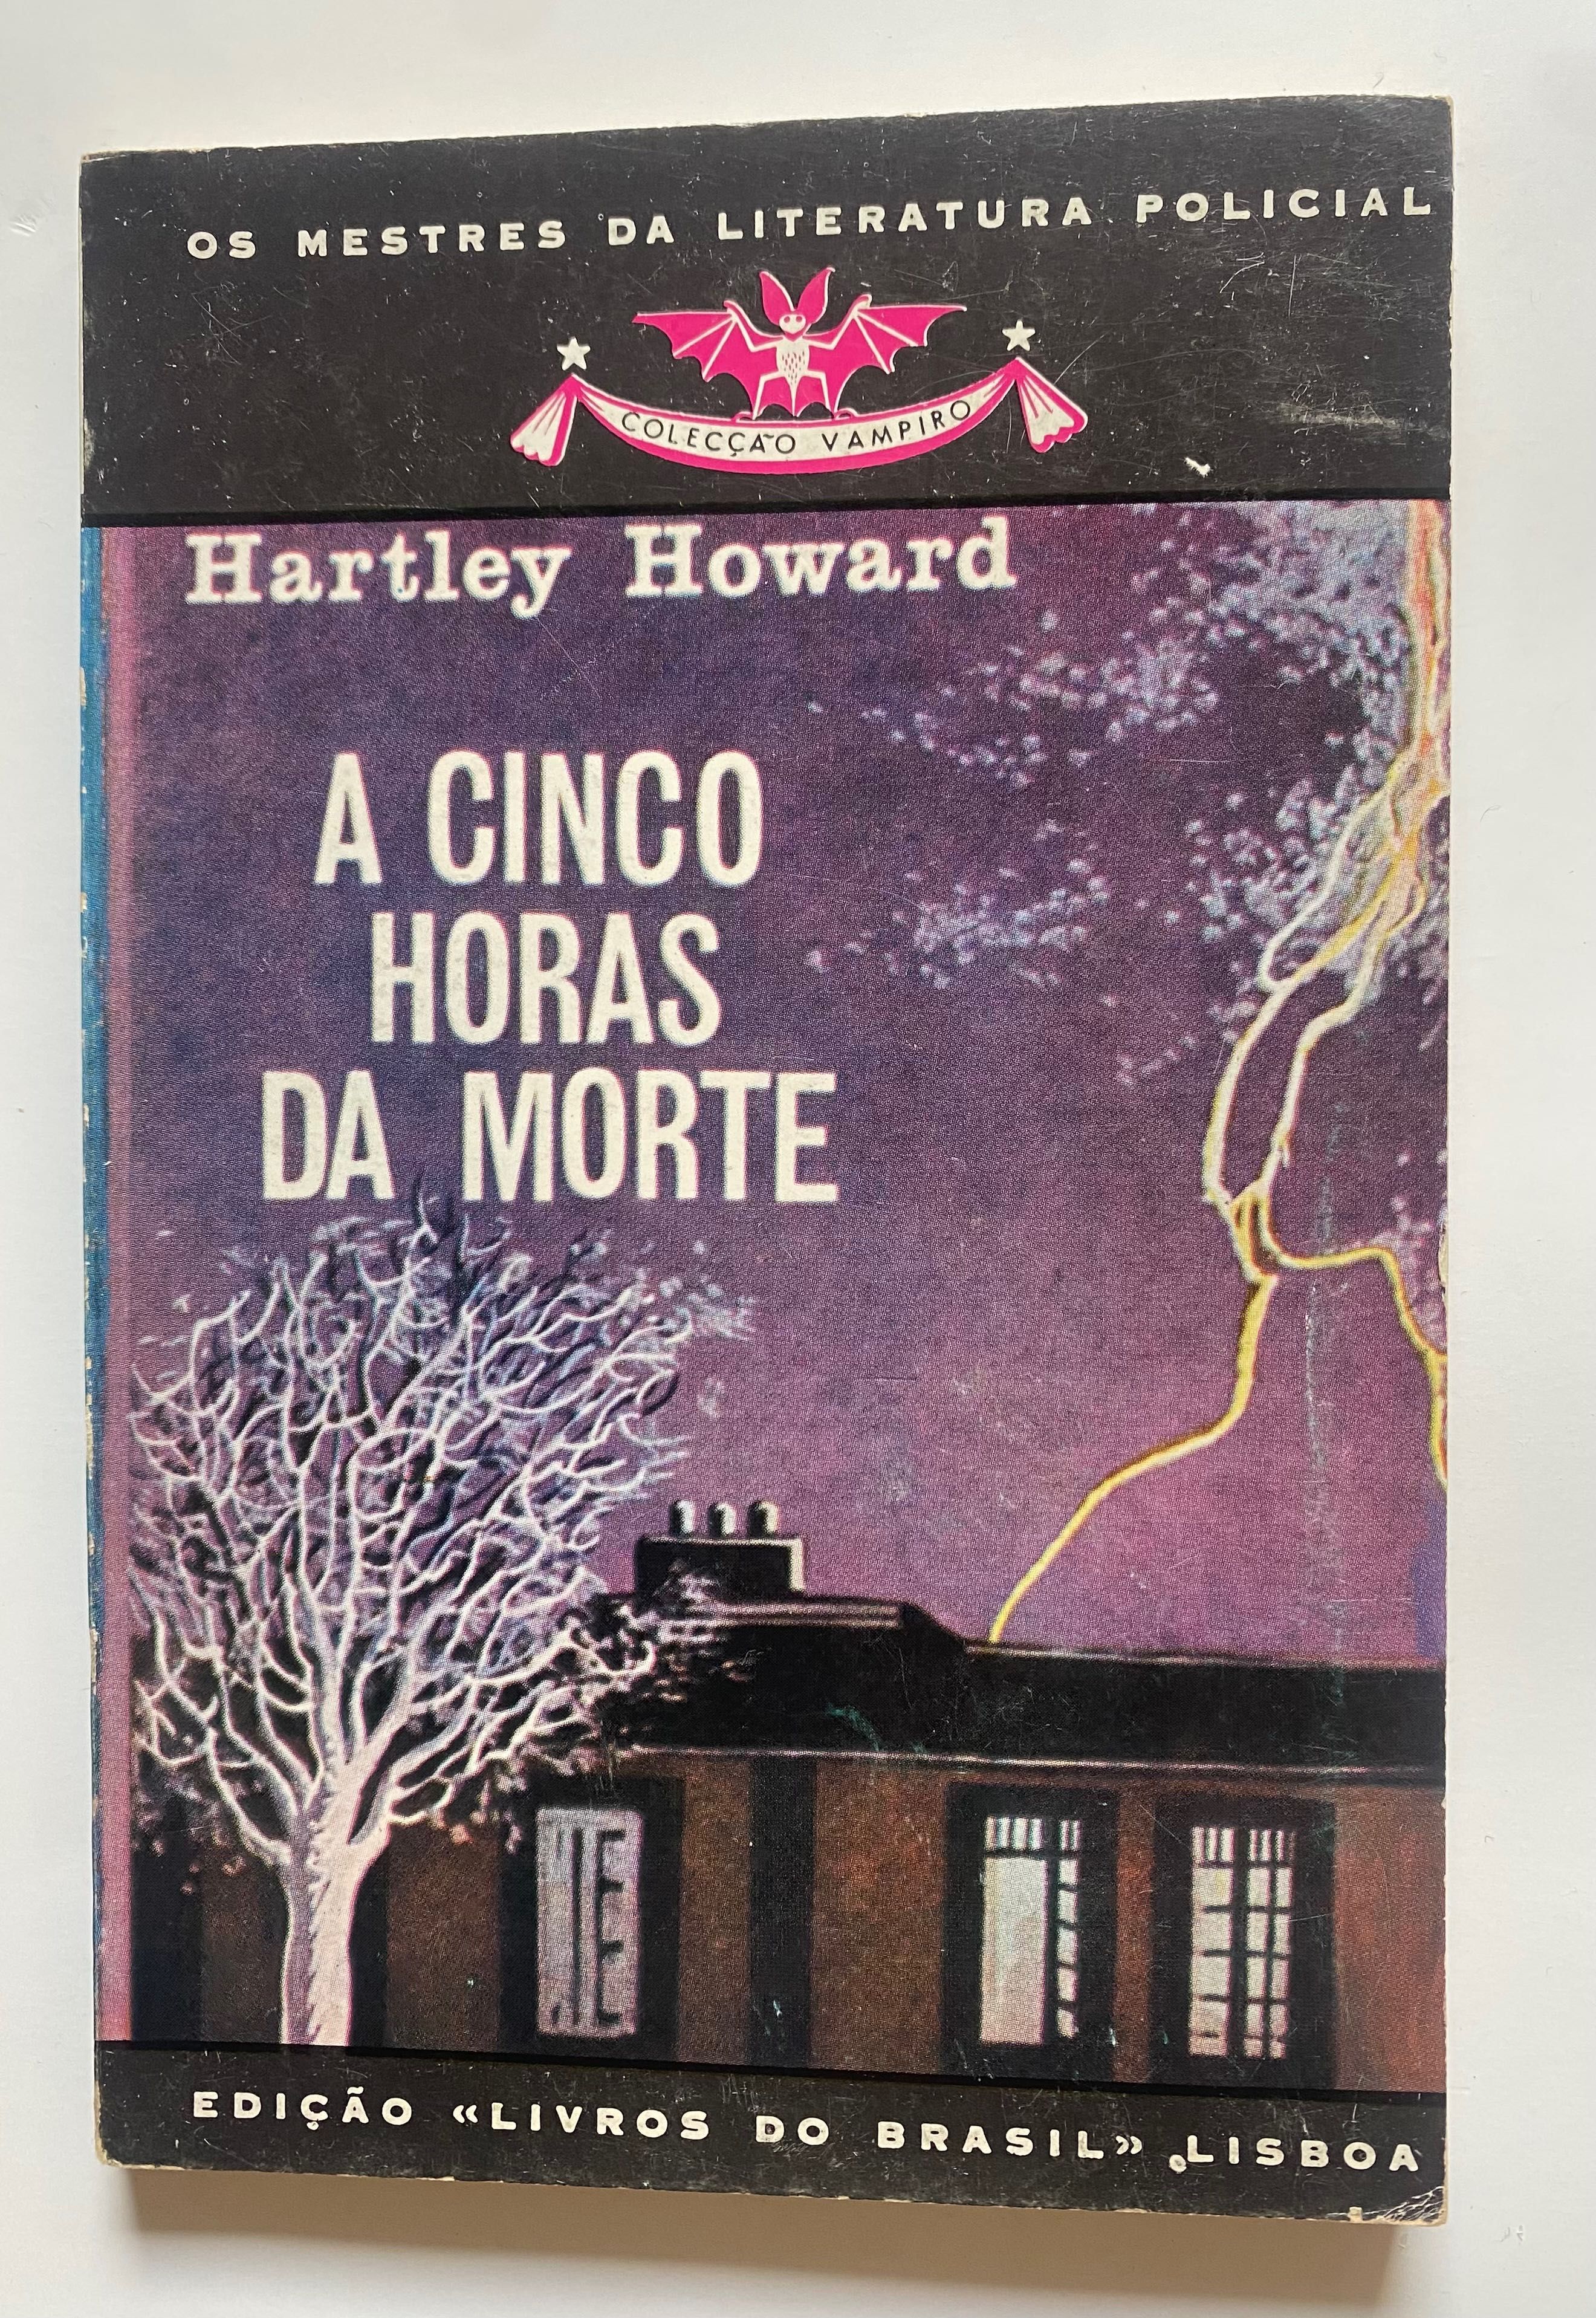 Livro “ A Cinco Horas da Morte” , de Hartley Howard